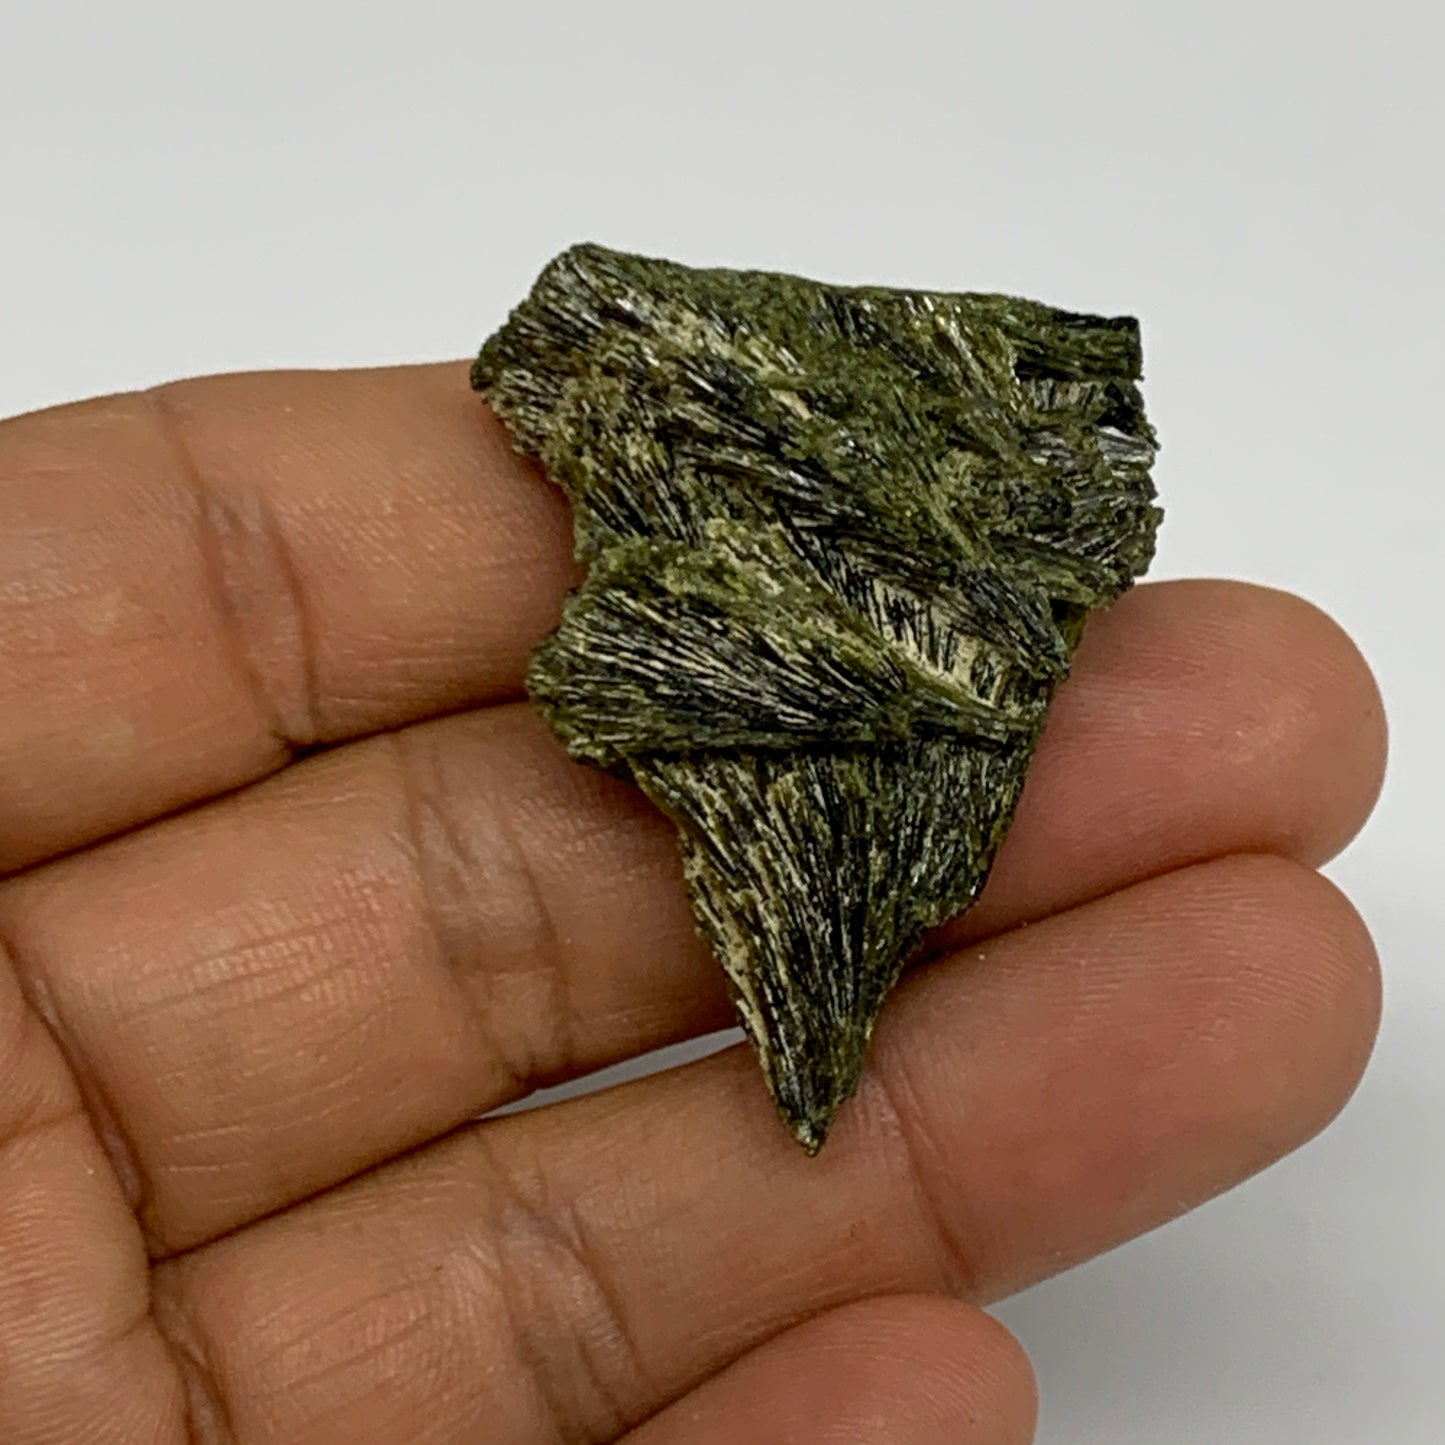 16.5g, 1.6"x1.3"x0.5",Green Epidote Custer/Leaf Mineral Specimen @Pakistan,B2757